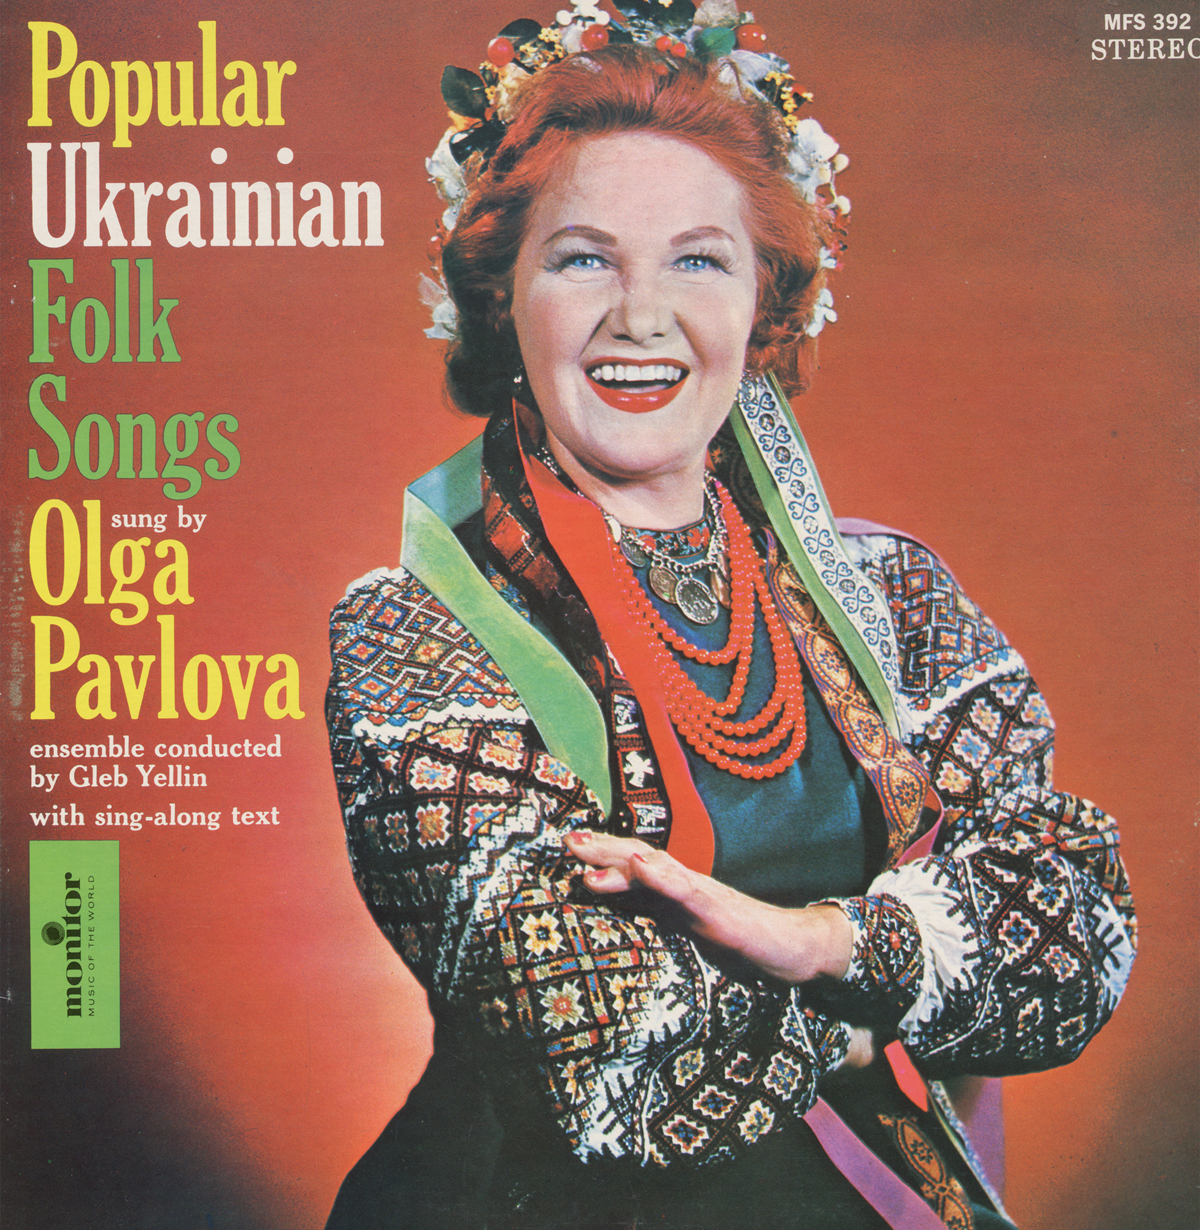 POPULAR UKRAINIAN FOLK SONGS